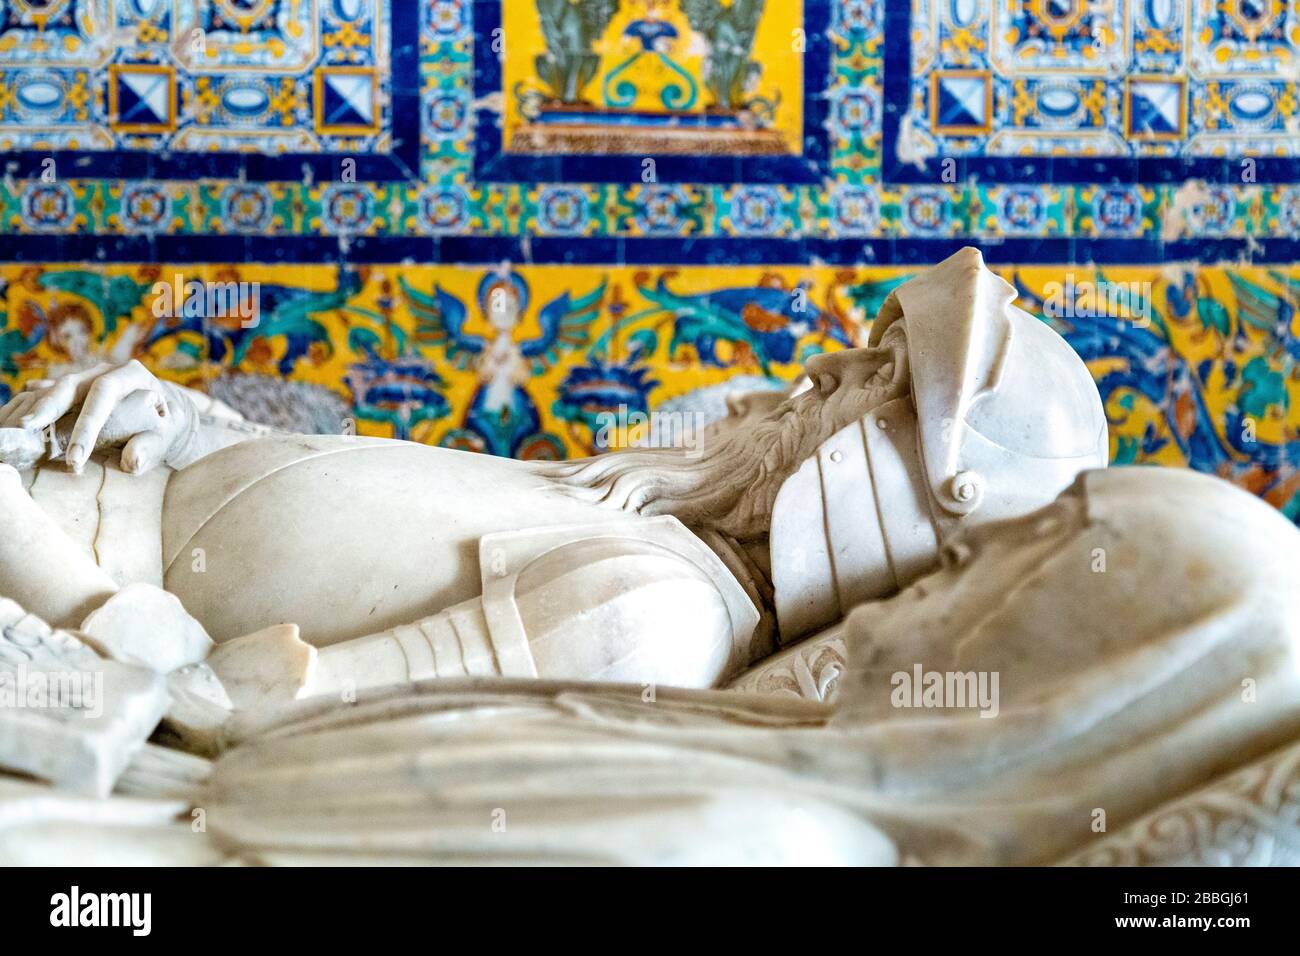 Sculptures tombales dans le mausolée de la famille Ribera, Musée andalou d'art contemporain et ancien monastère de Santa Maria de las Cuevas, Séville, Espagne Banque D'Images